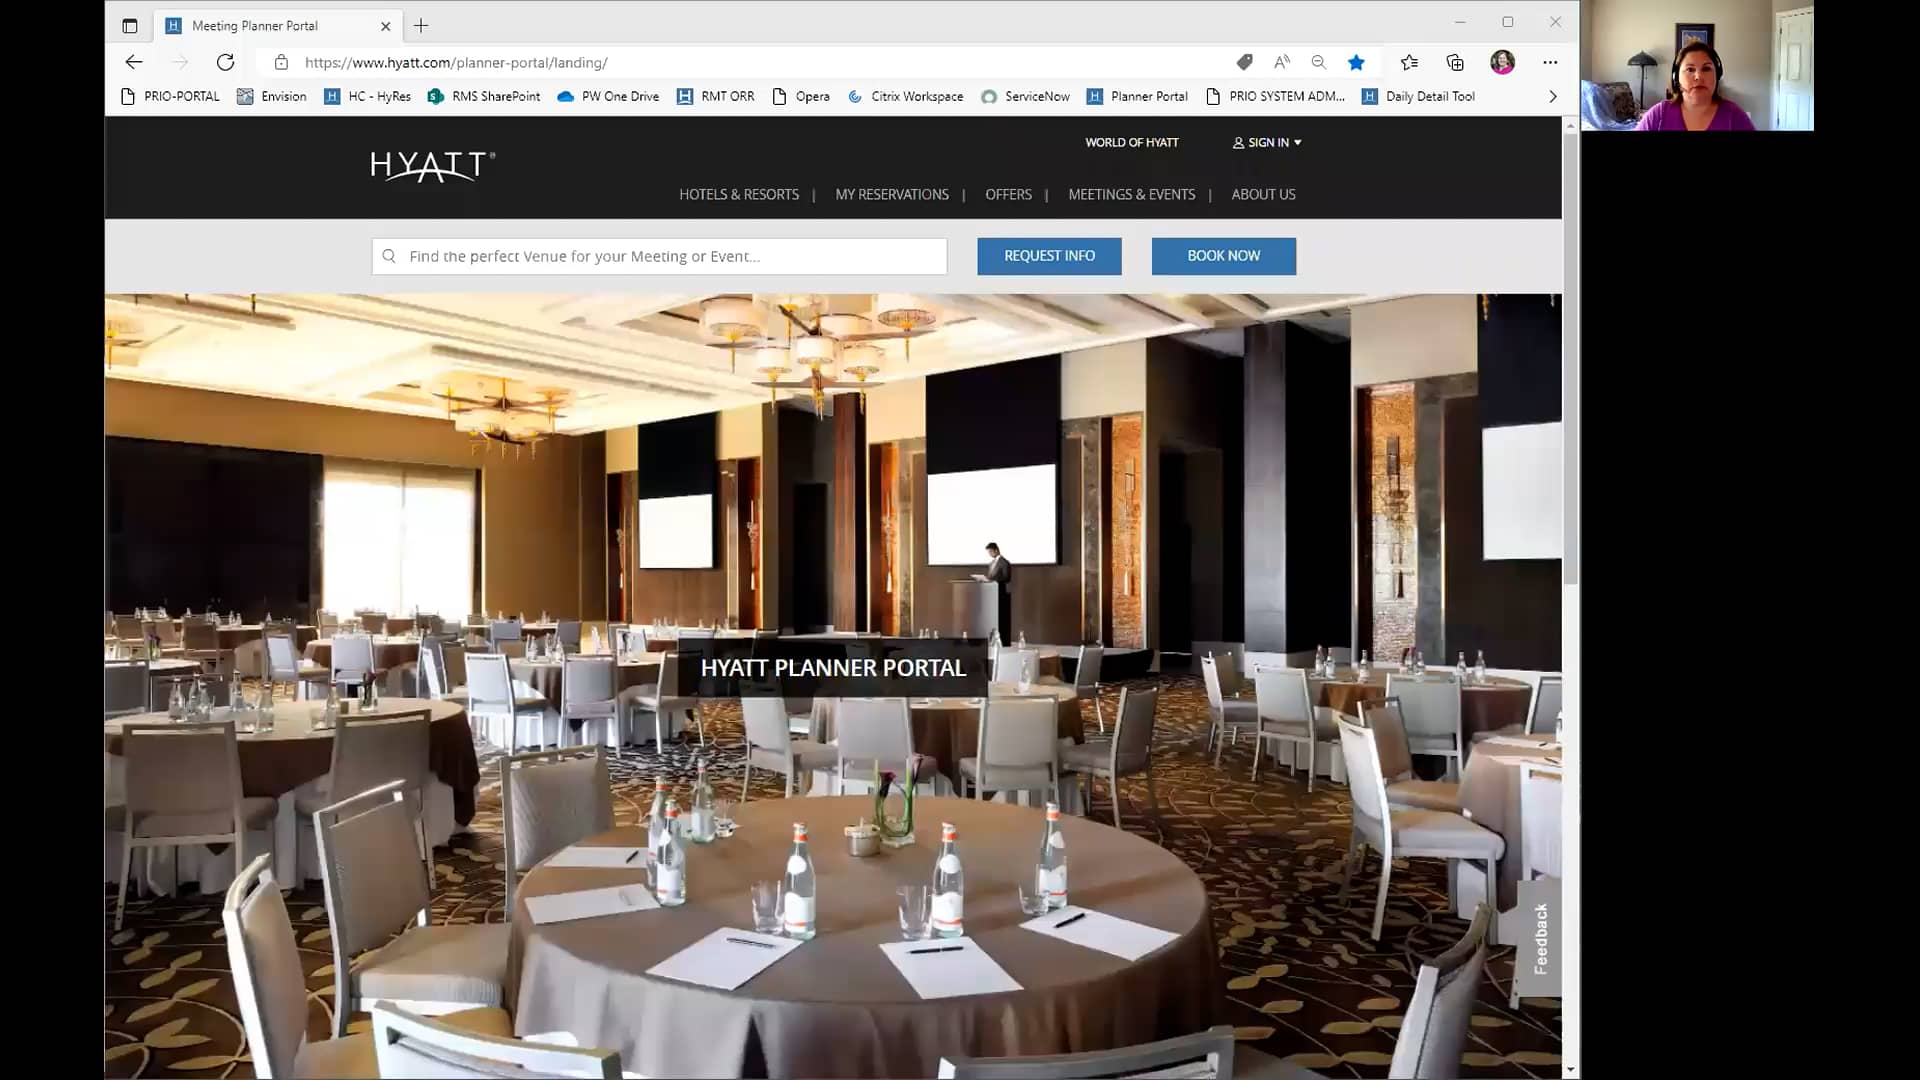 Hyatt Meeting Planner Portal on Vimeo